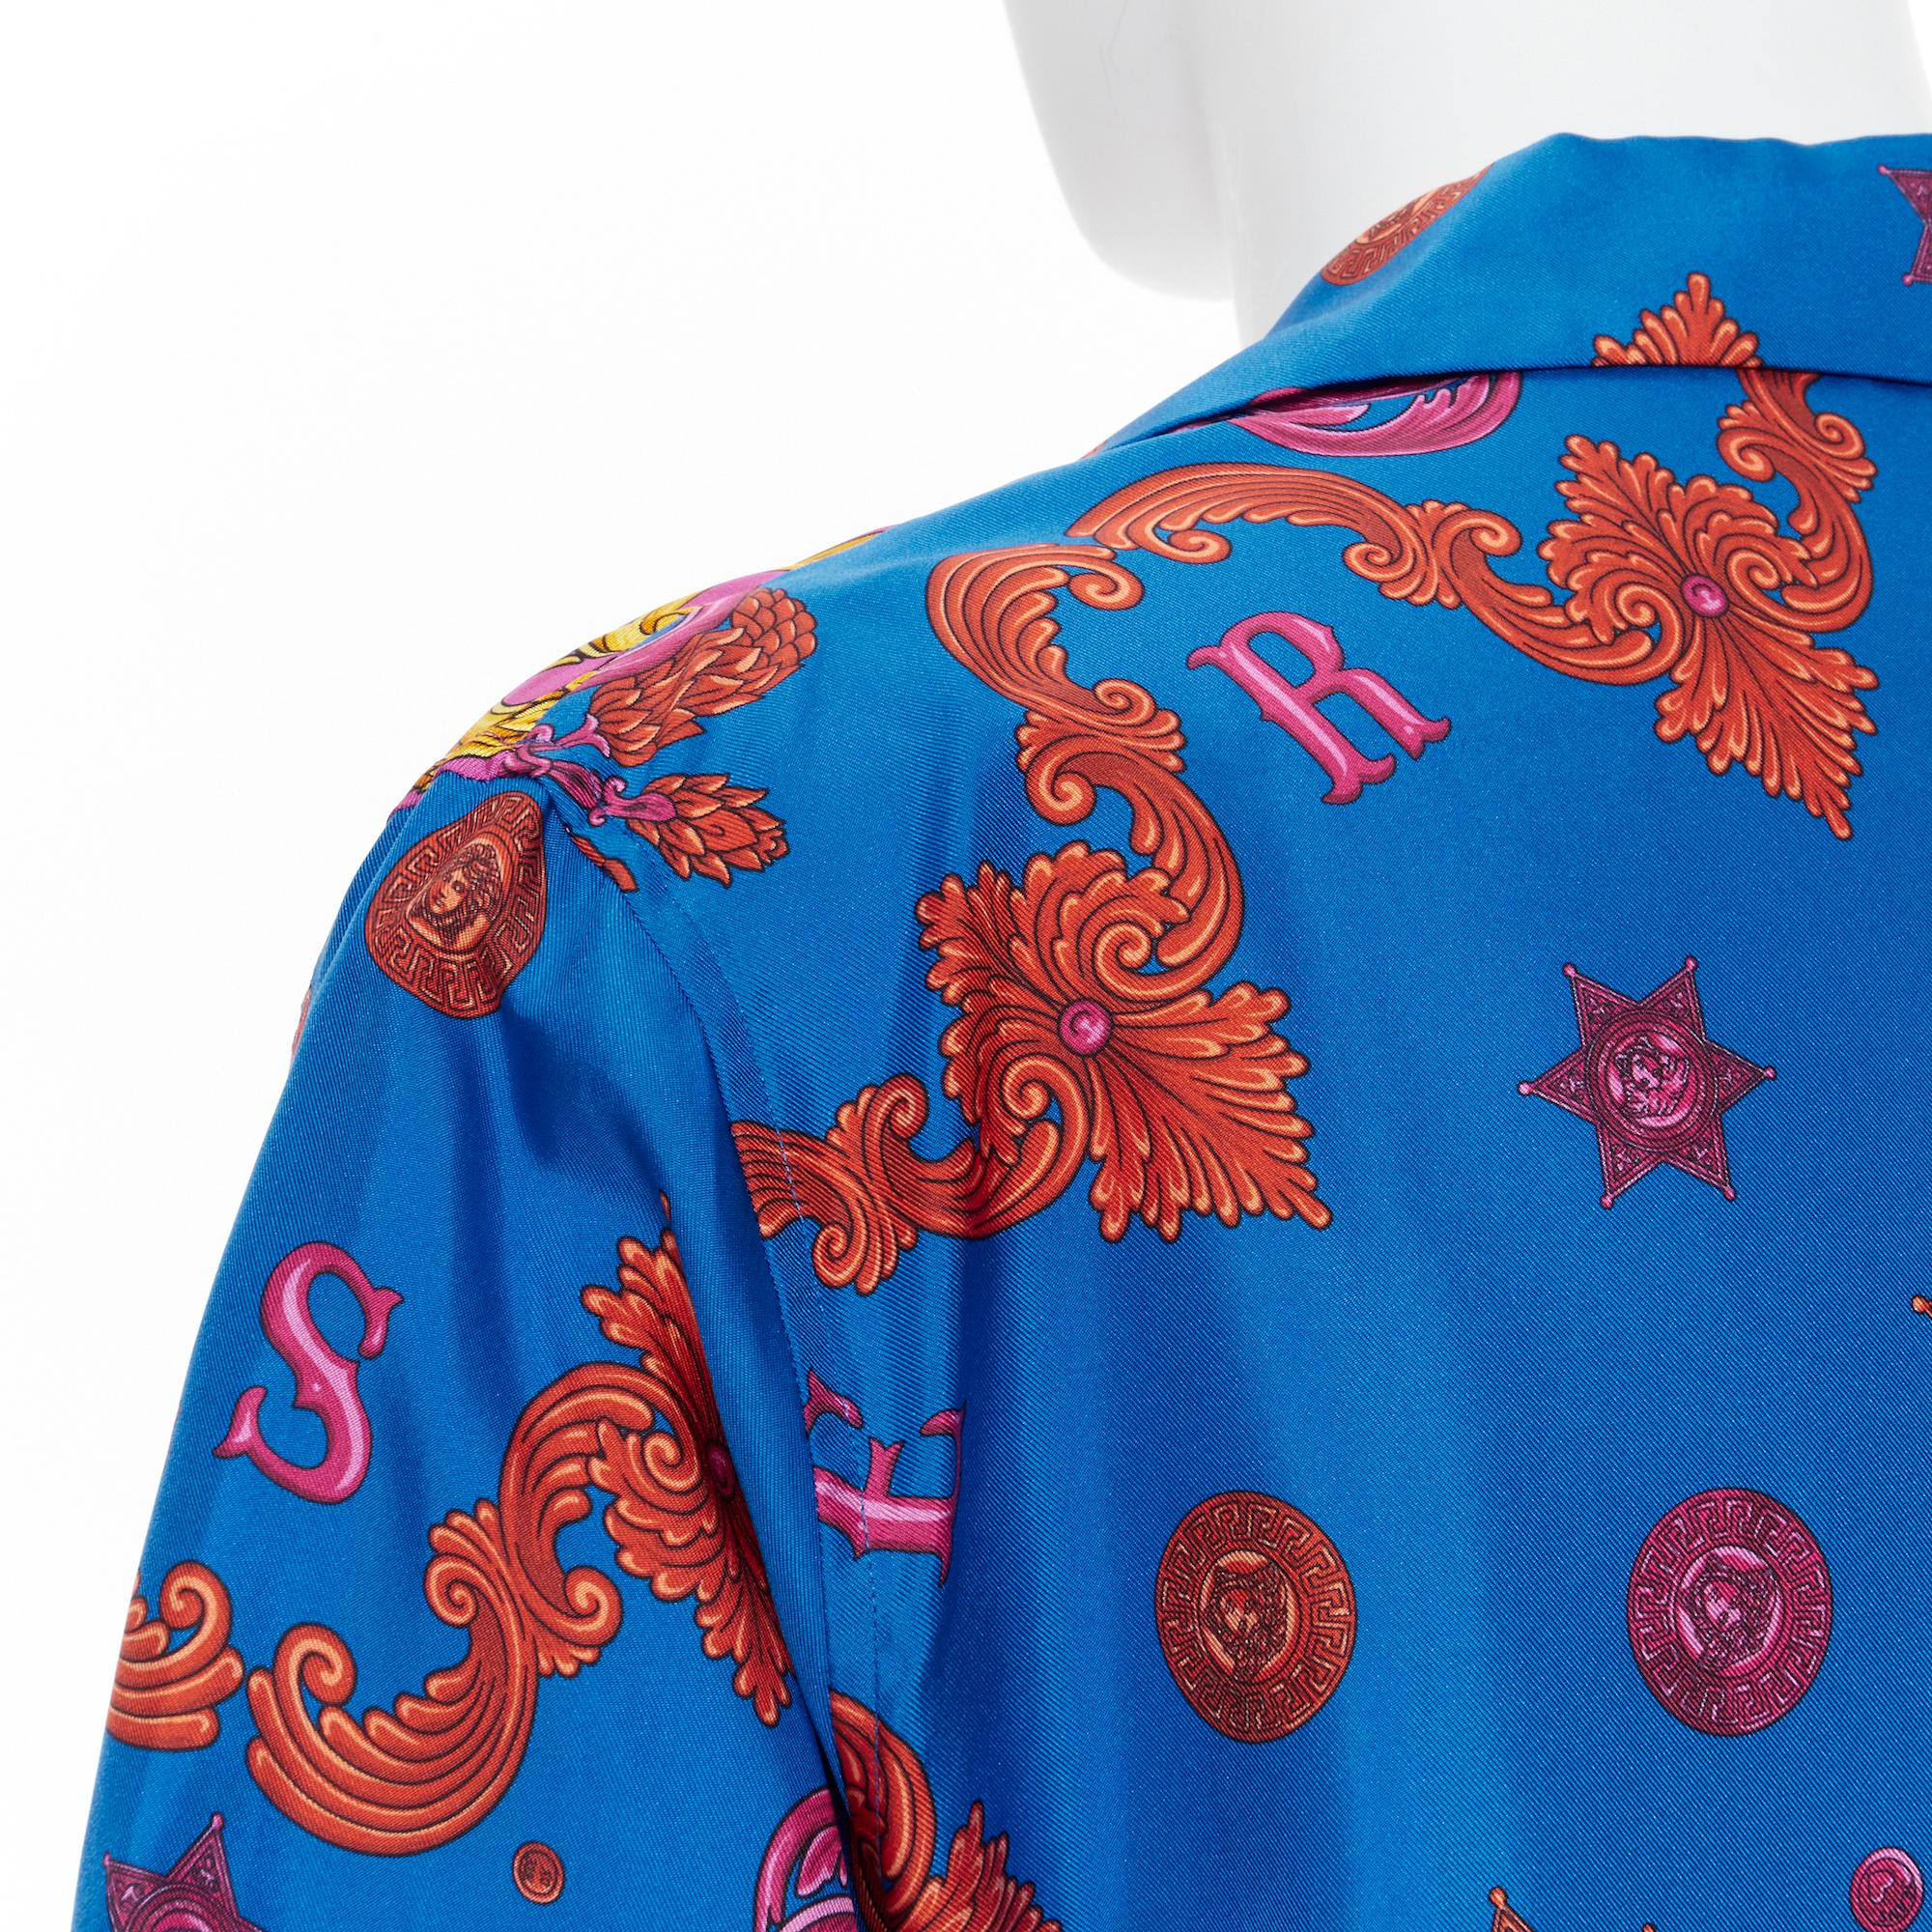 Men's new VERSACE 100% silk blue pink western barocco Medusa bowling shirt EU39 M